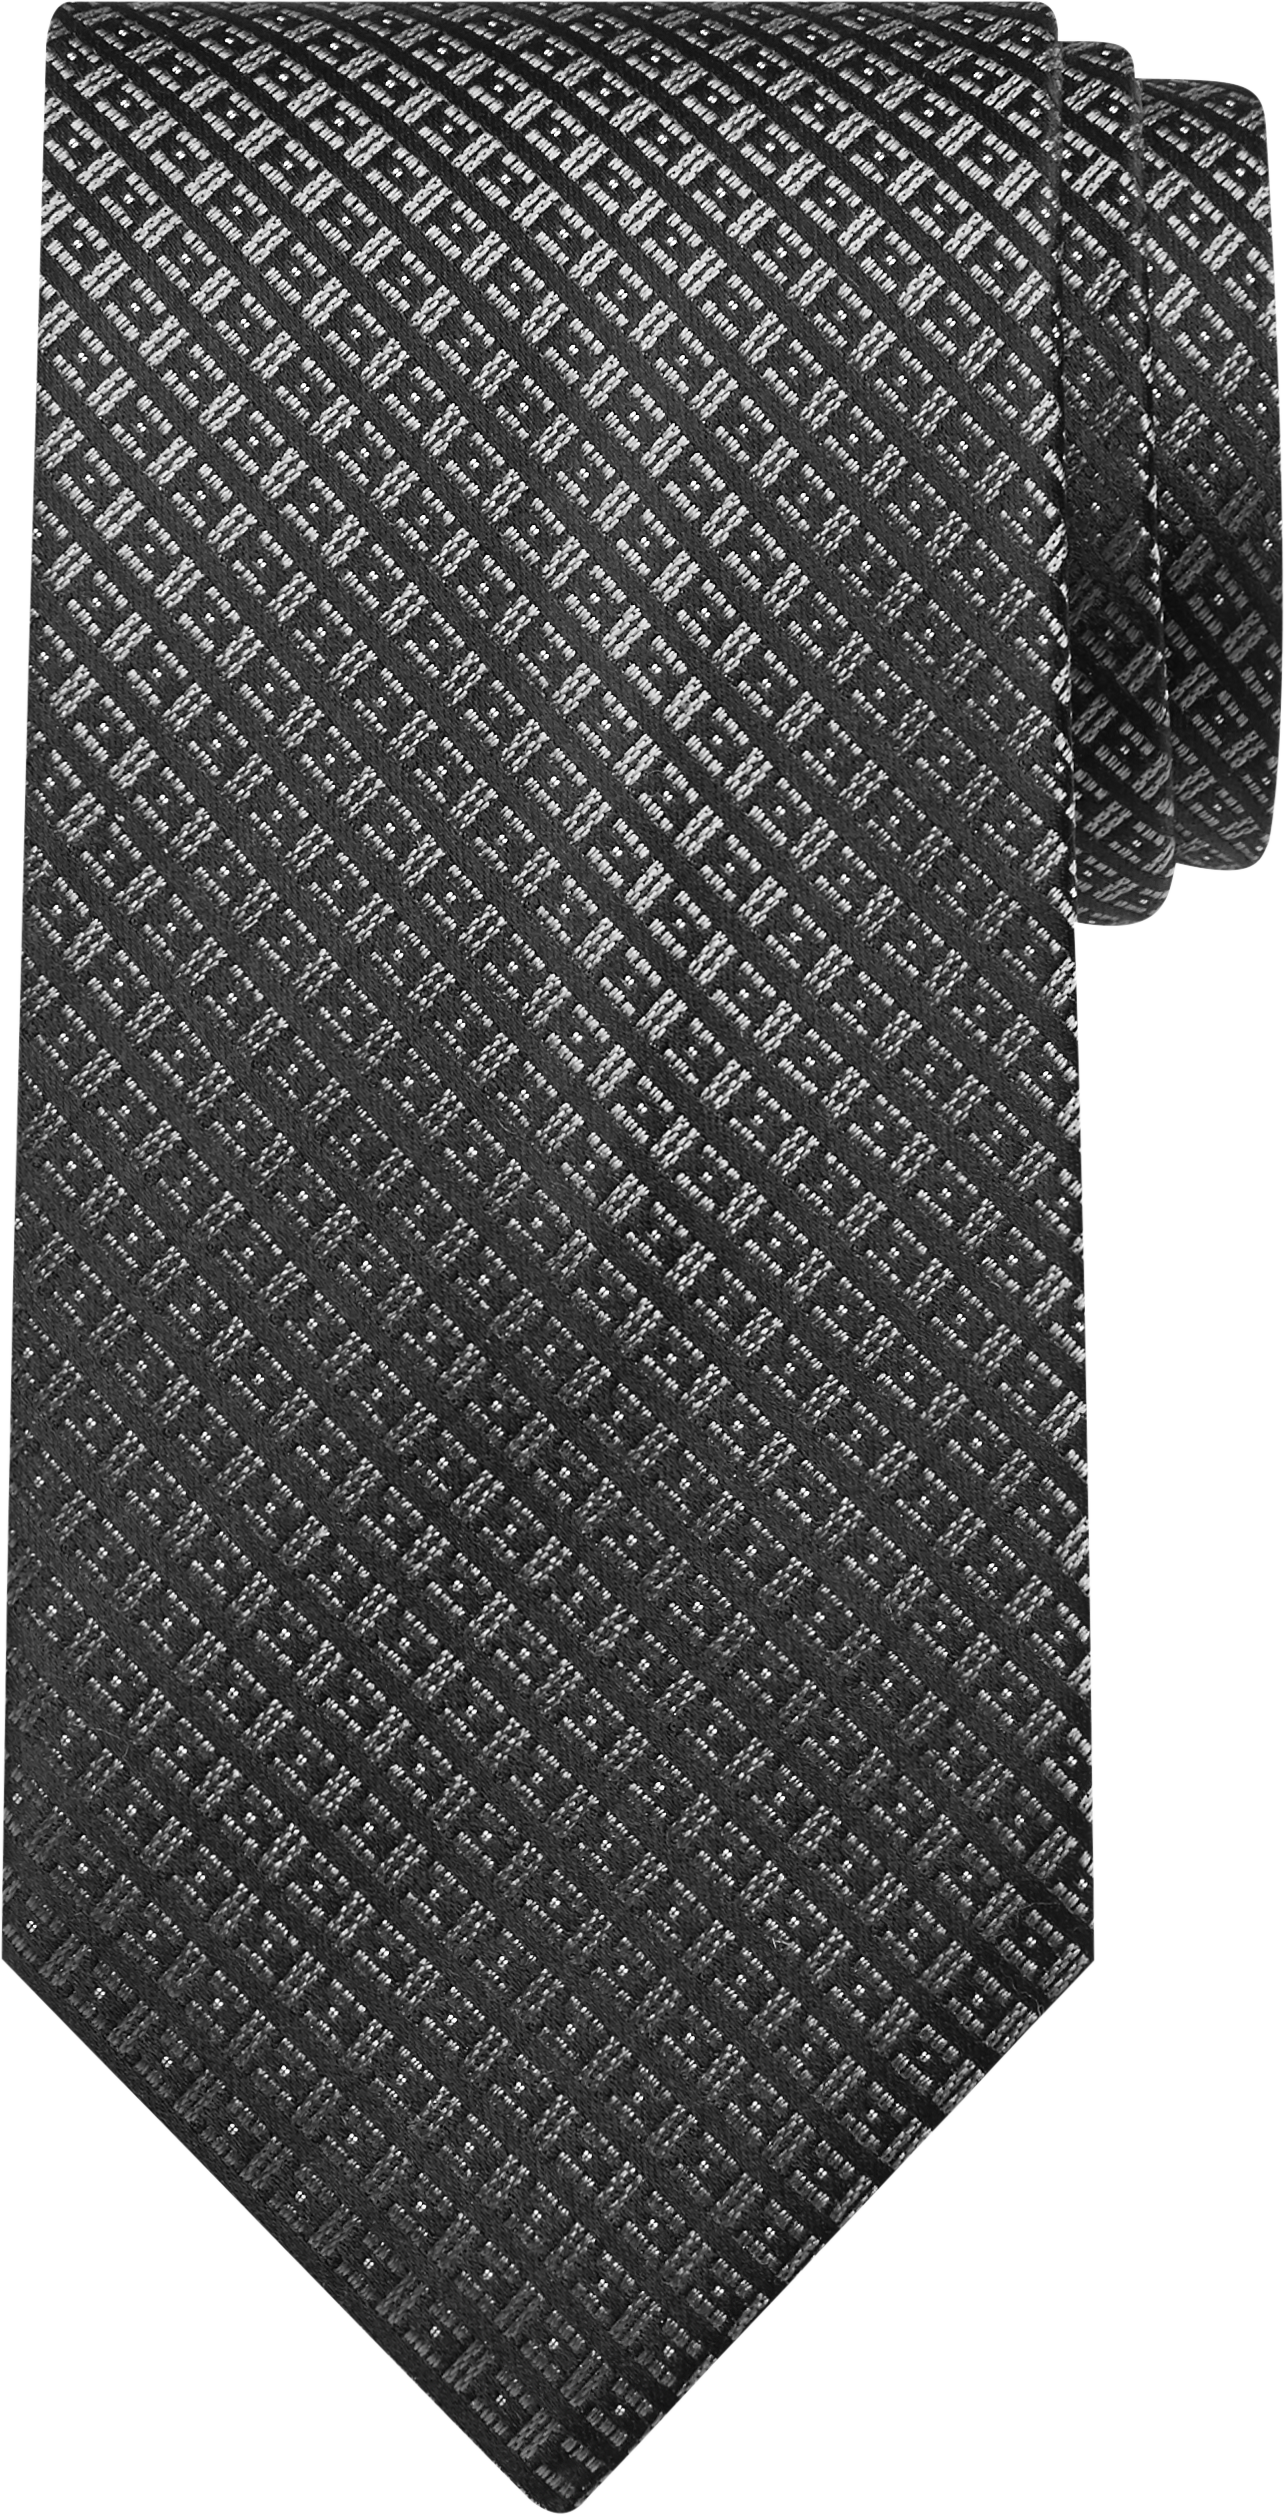 Woven Grid Narrow Tie